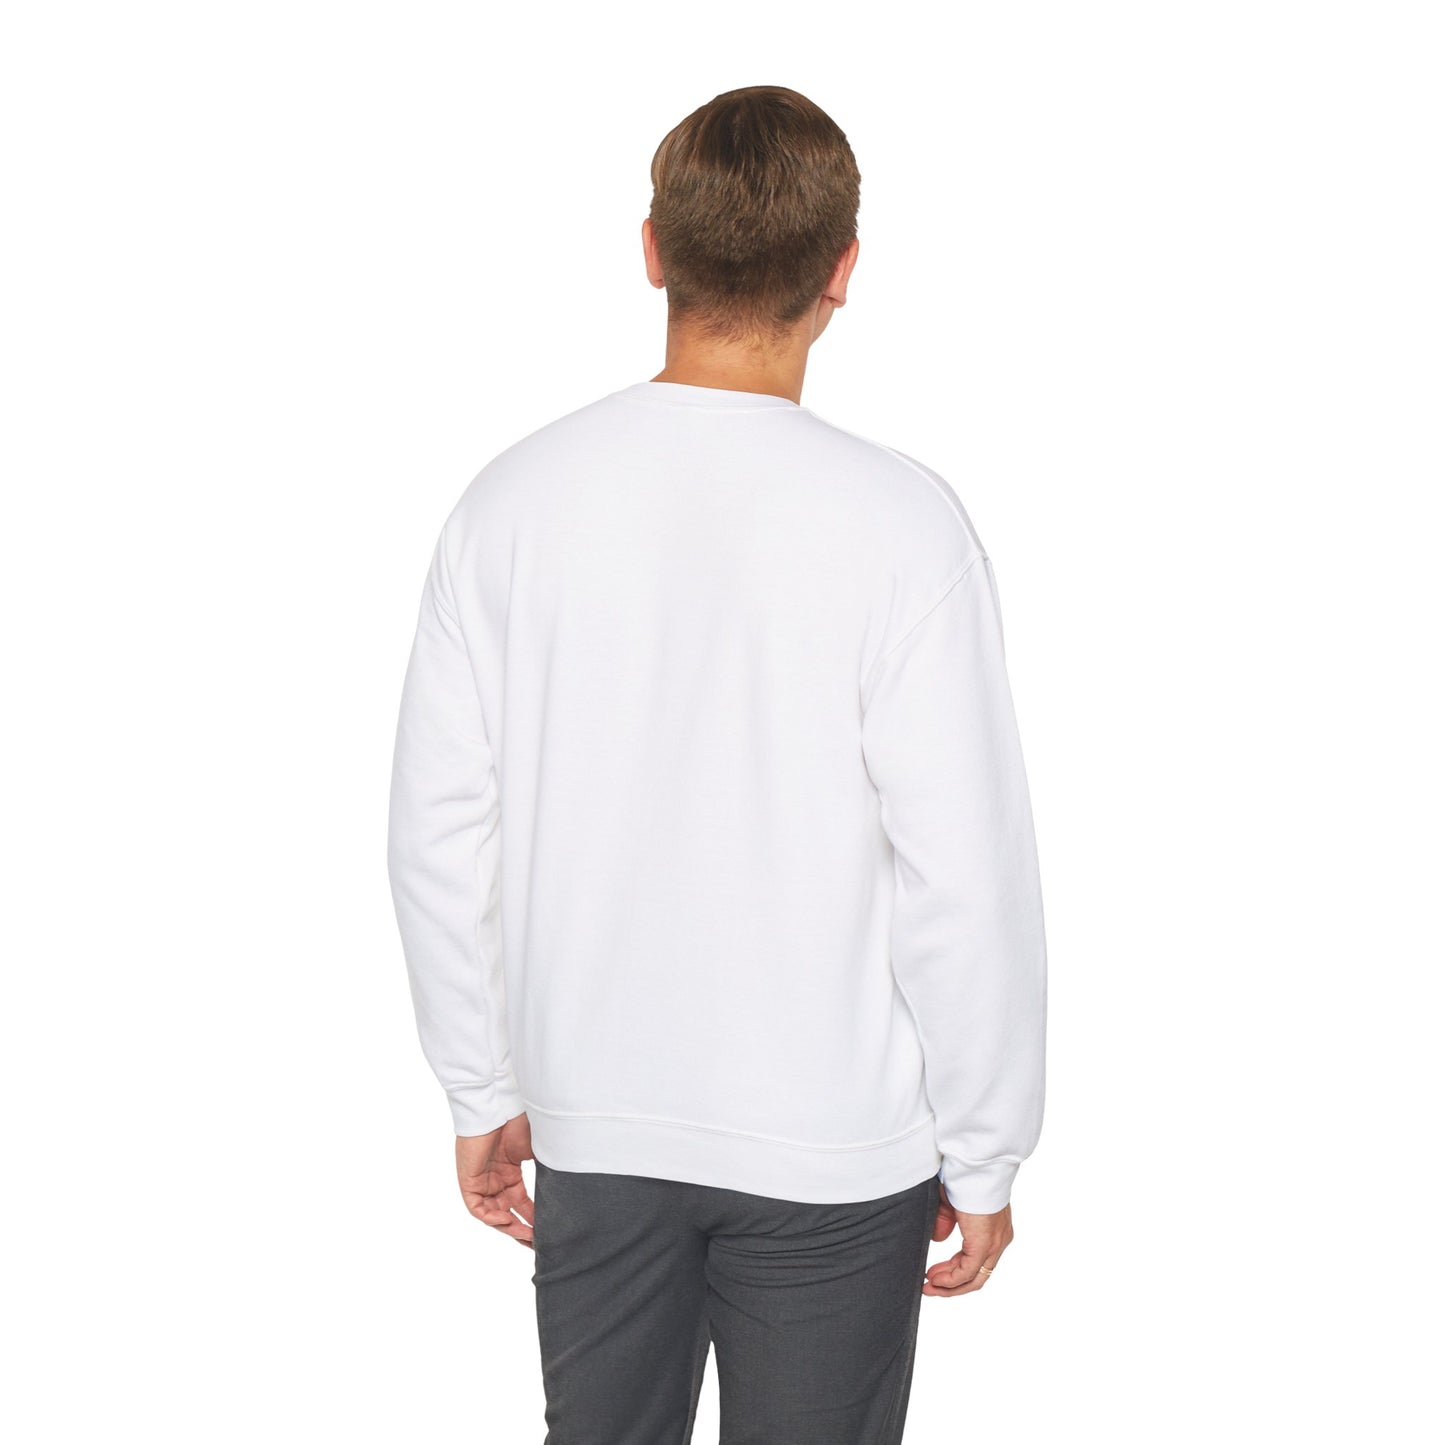 Black and White Rose - Unisex Crewneck Sweatshirt